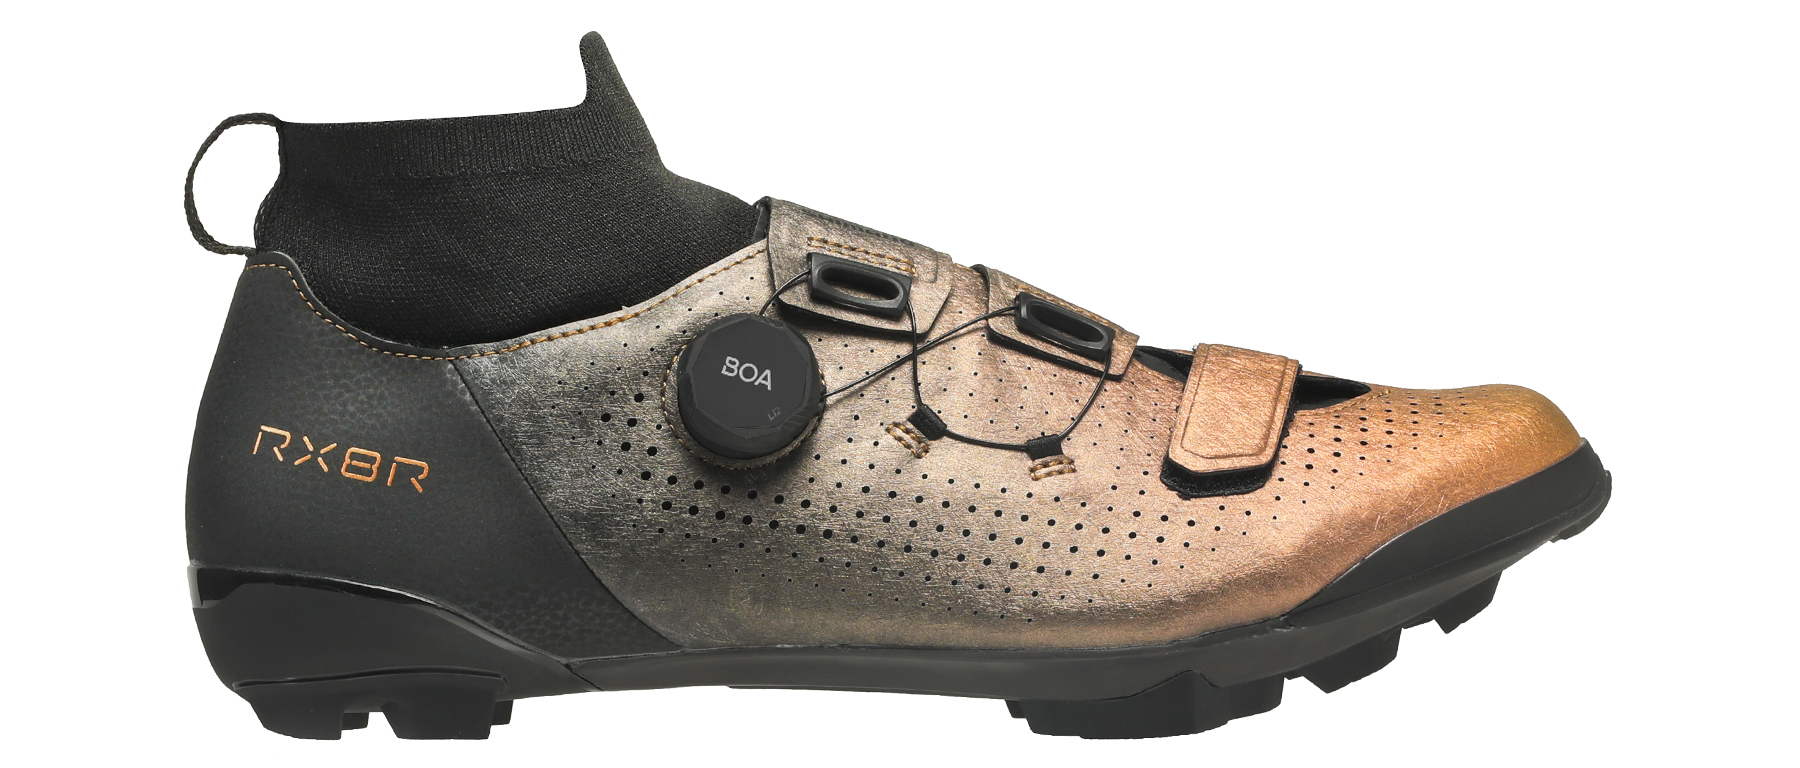 Shimano SH-RX801R Gravel Shoes